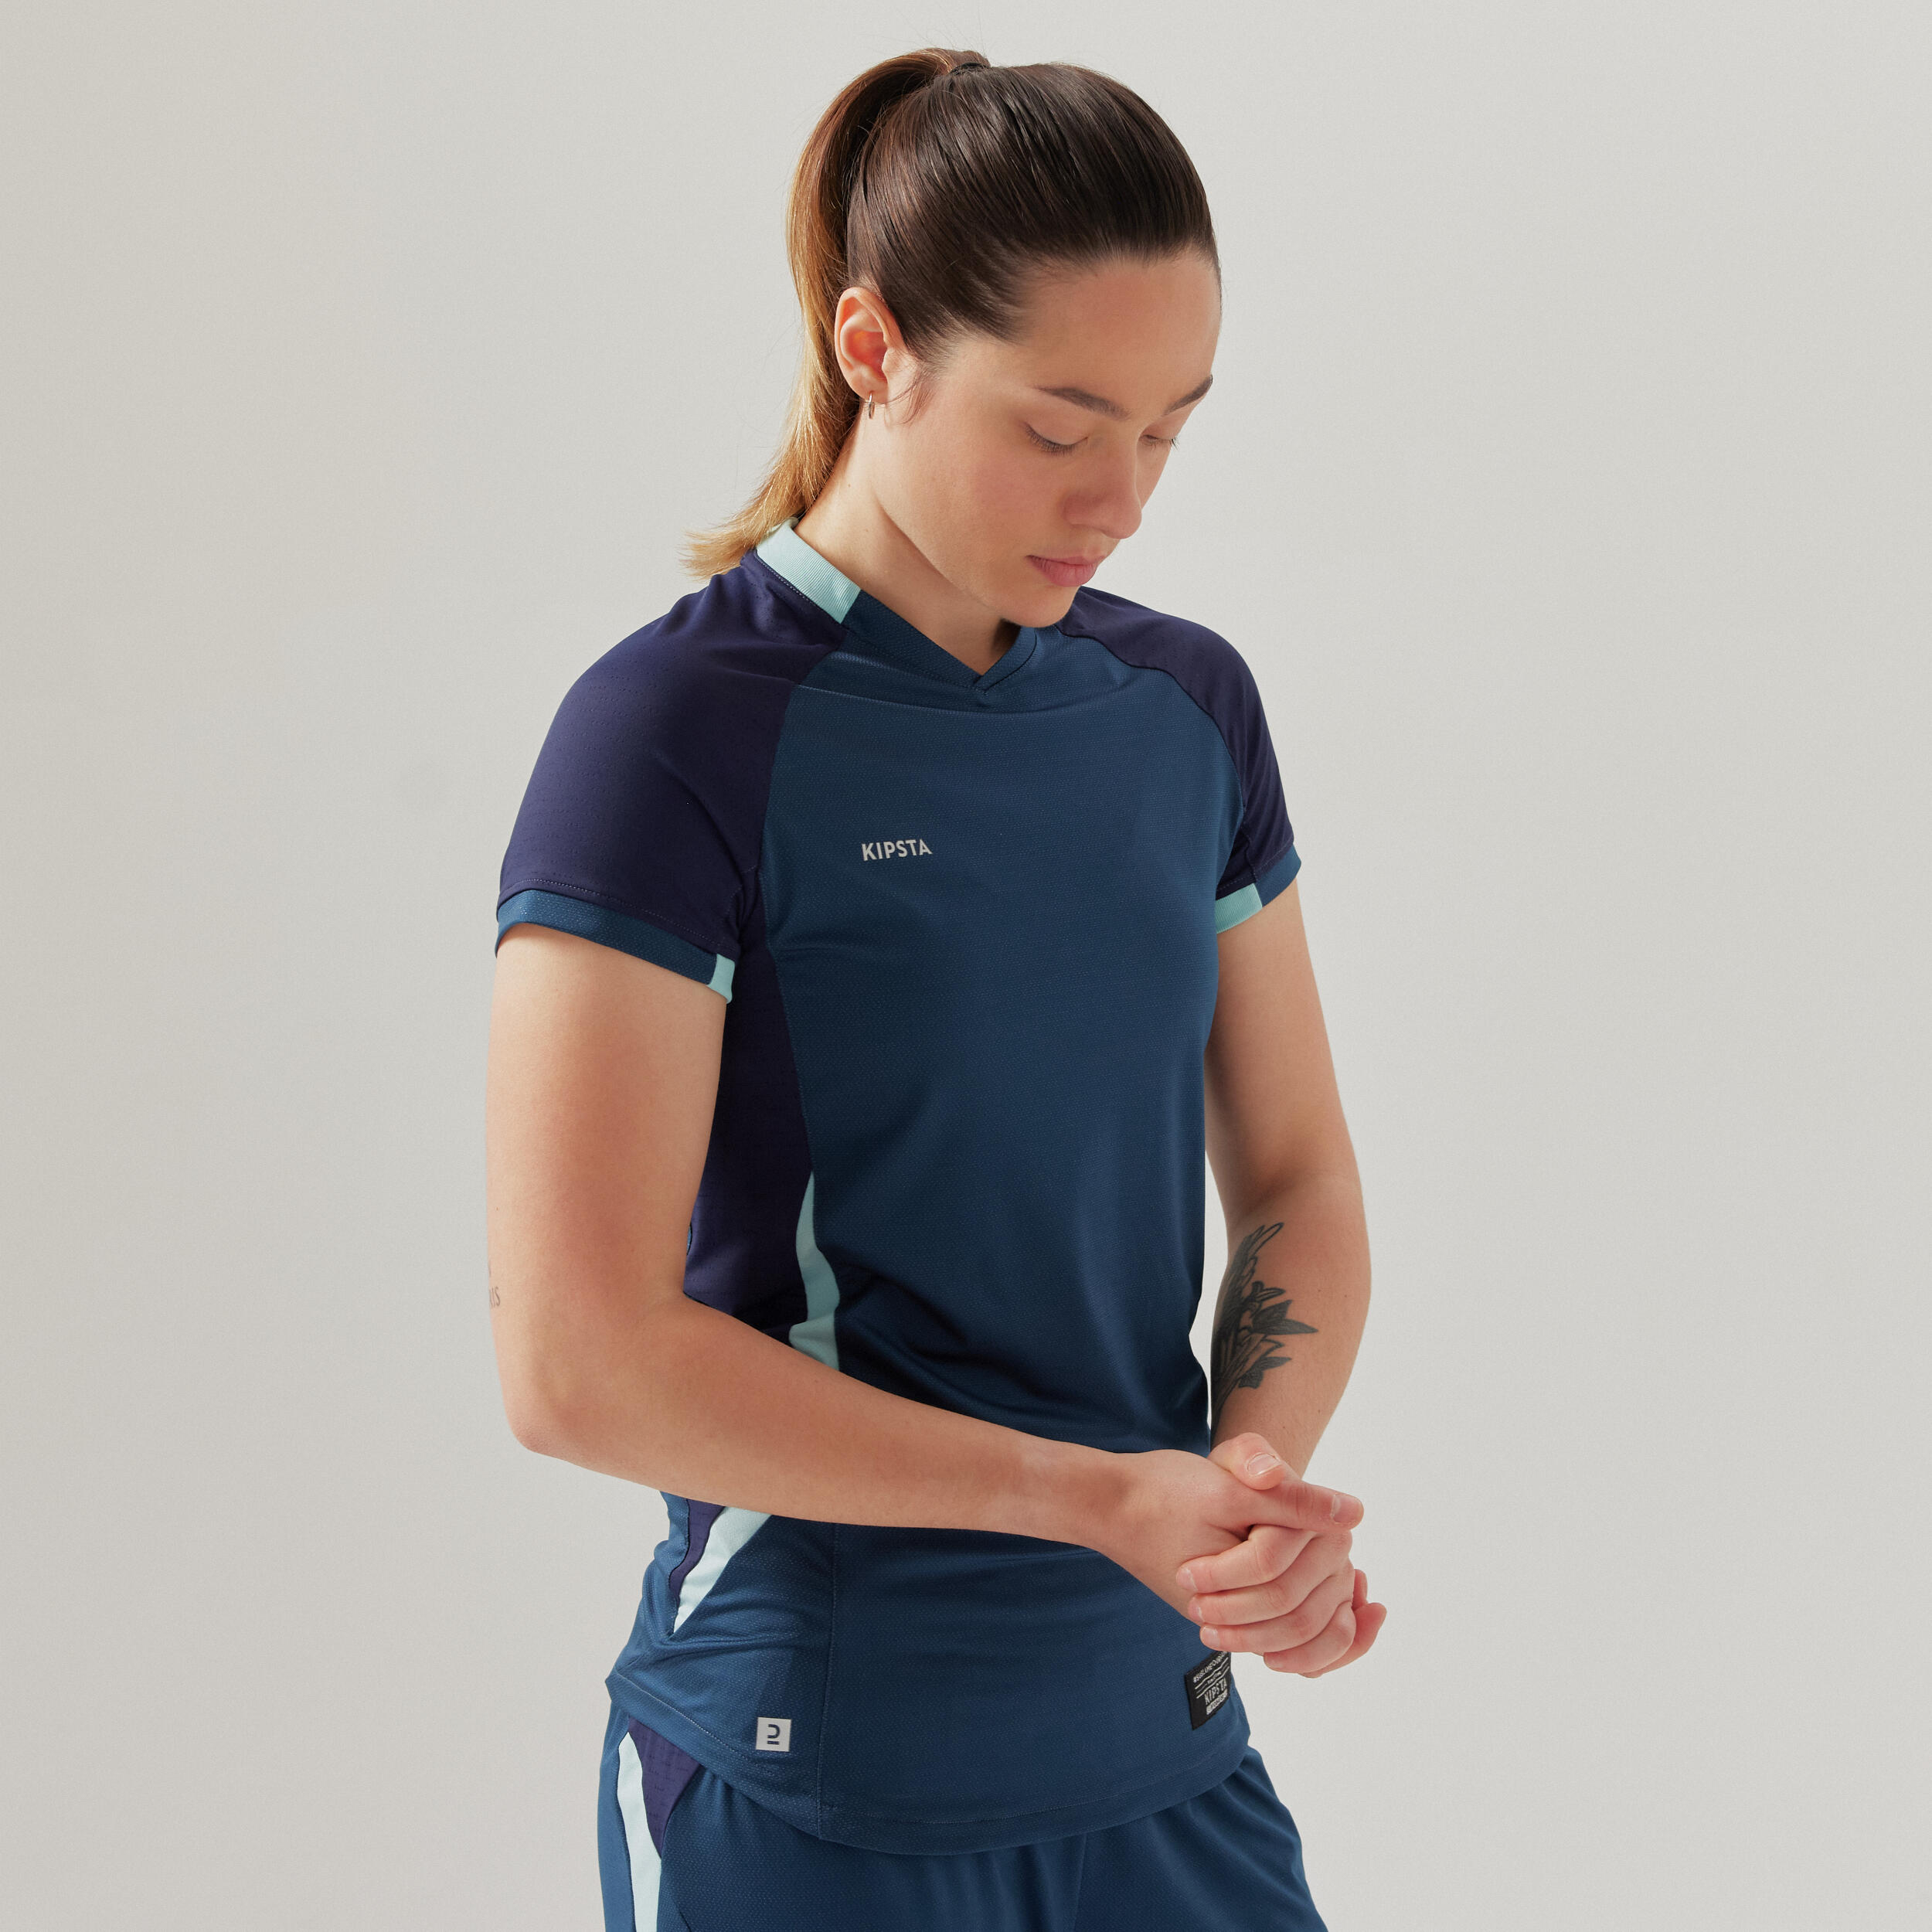 Women's Short-Sleeved Slim Cut Football Shirt - Blue 5/10